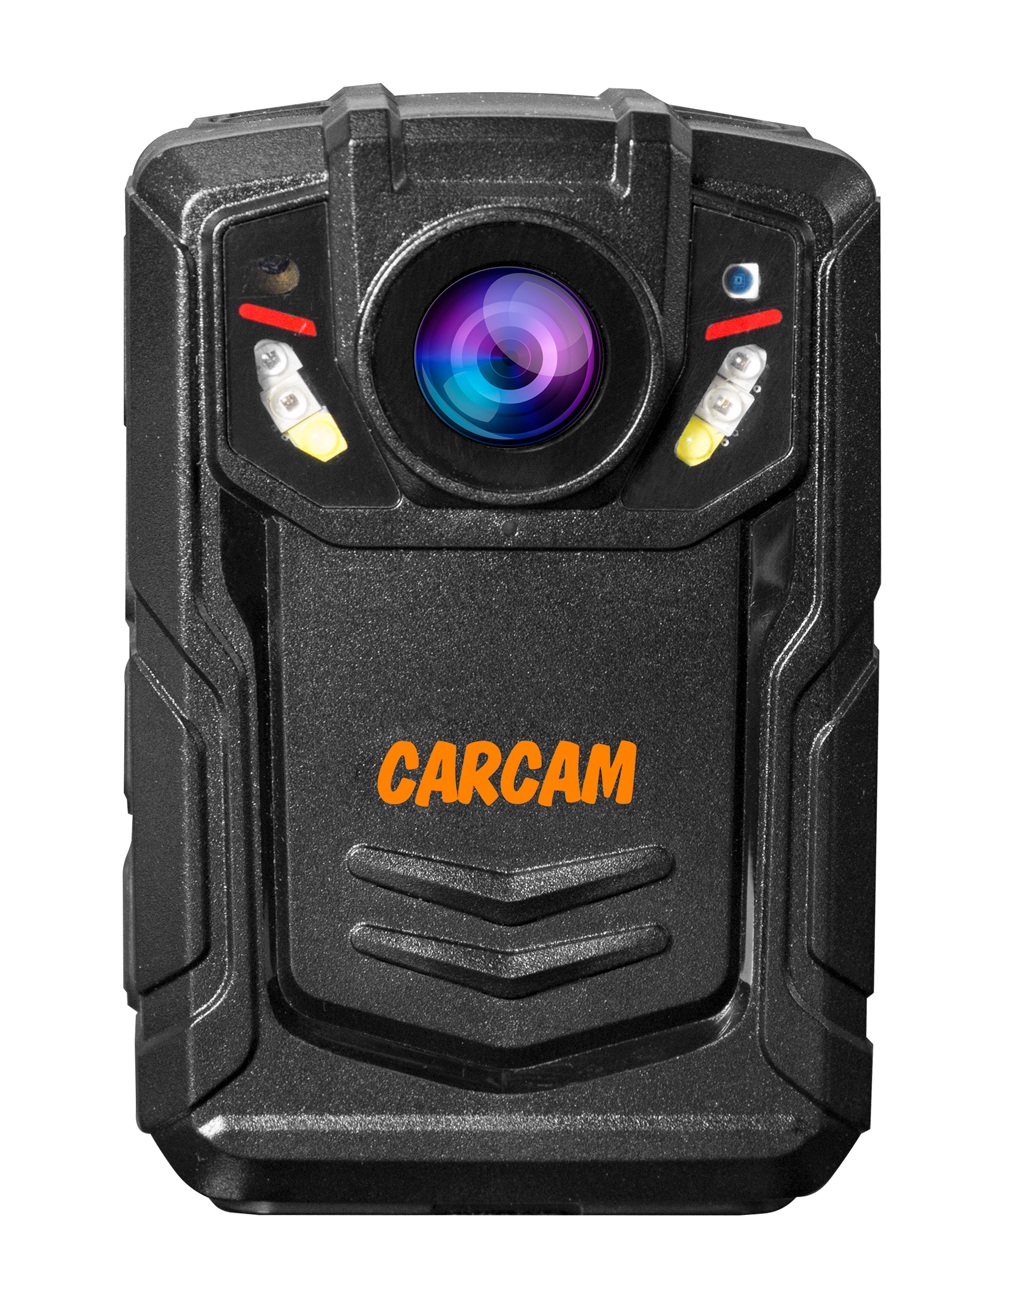 Персональный видеорегистратор CARCAM COMBAT 2S PRO 256GB персональный quad hd видеорегистратор для работников технических объектов carcam combat 2s prof 64gb